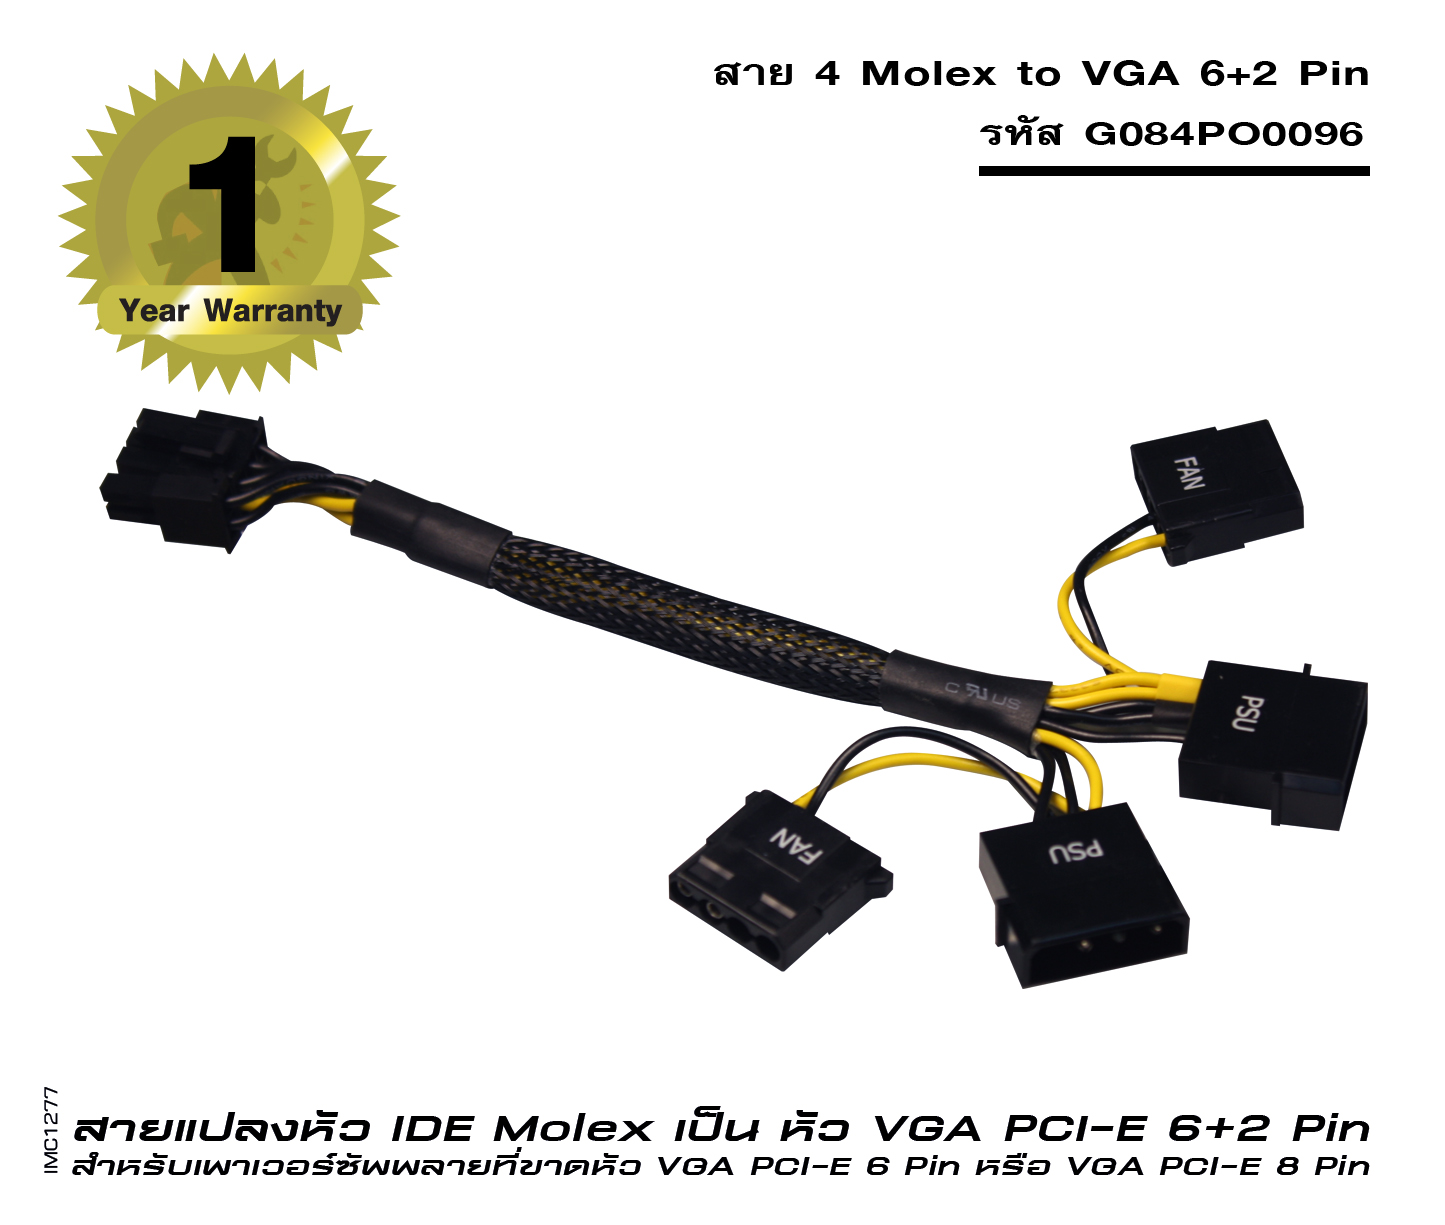 สาย 4 Molex to VGA 6+2 Pin (รหัส G084PO0096)